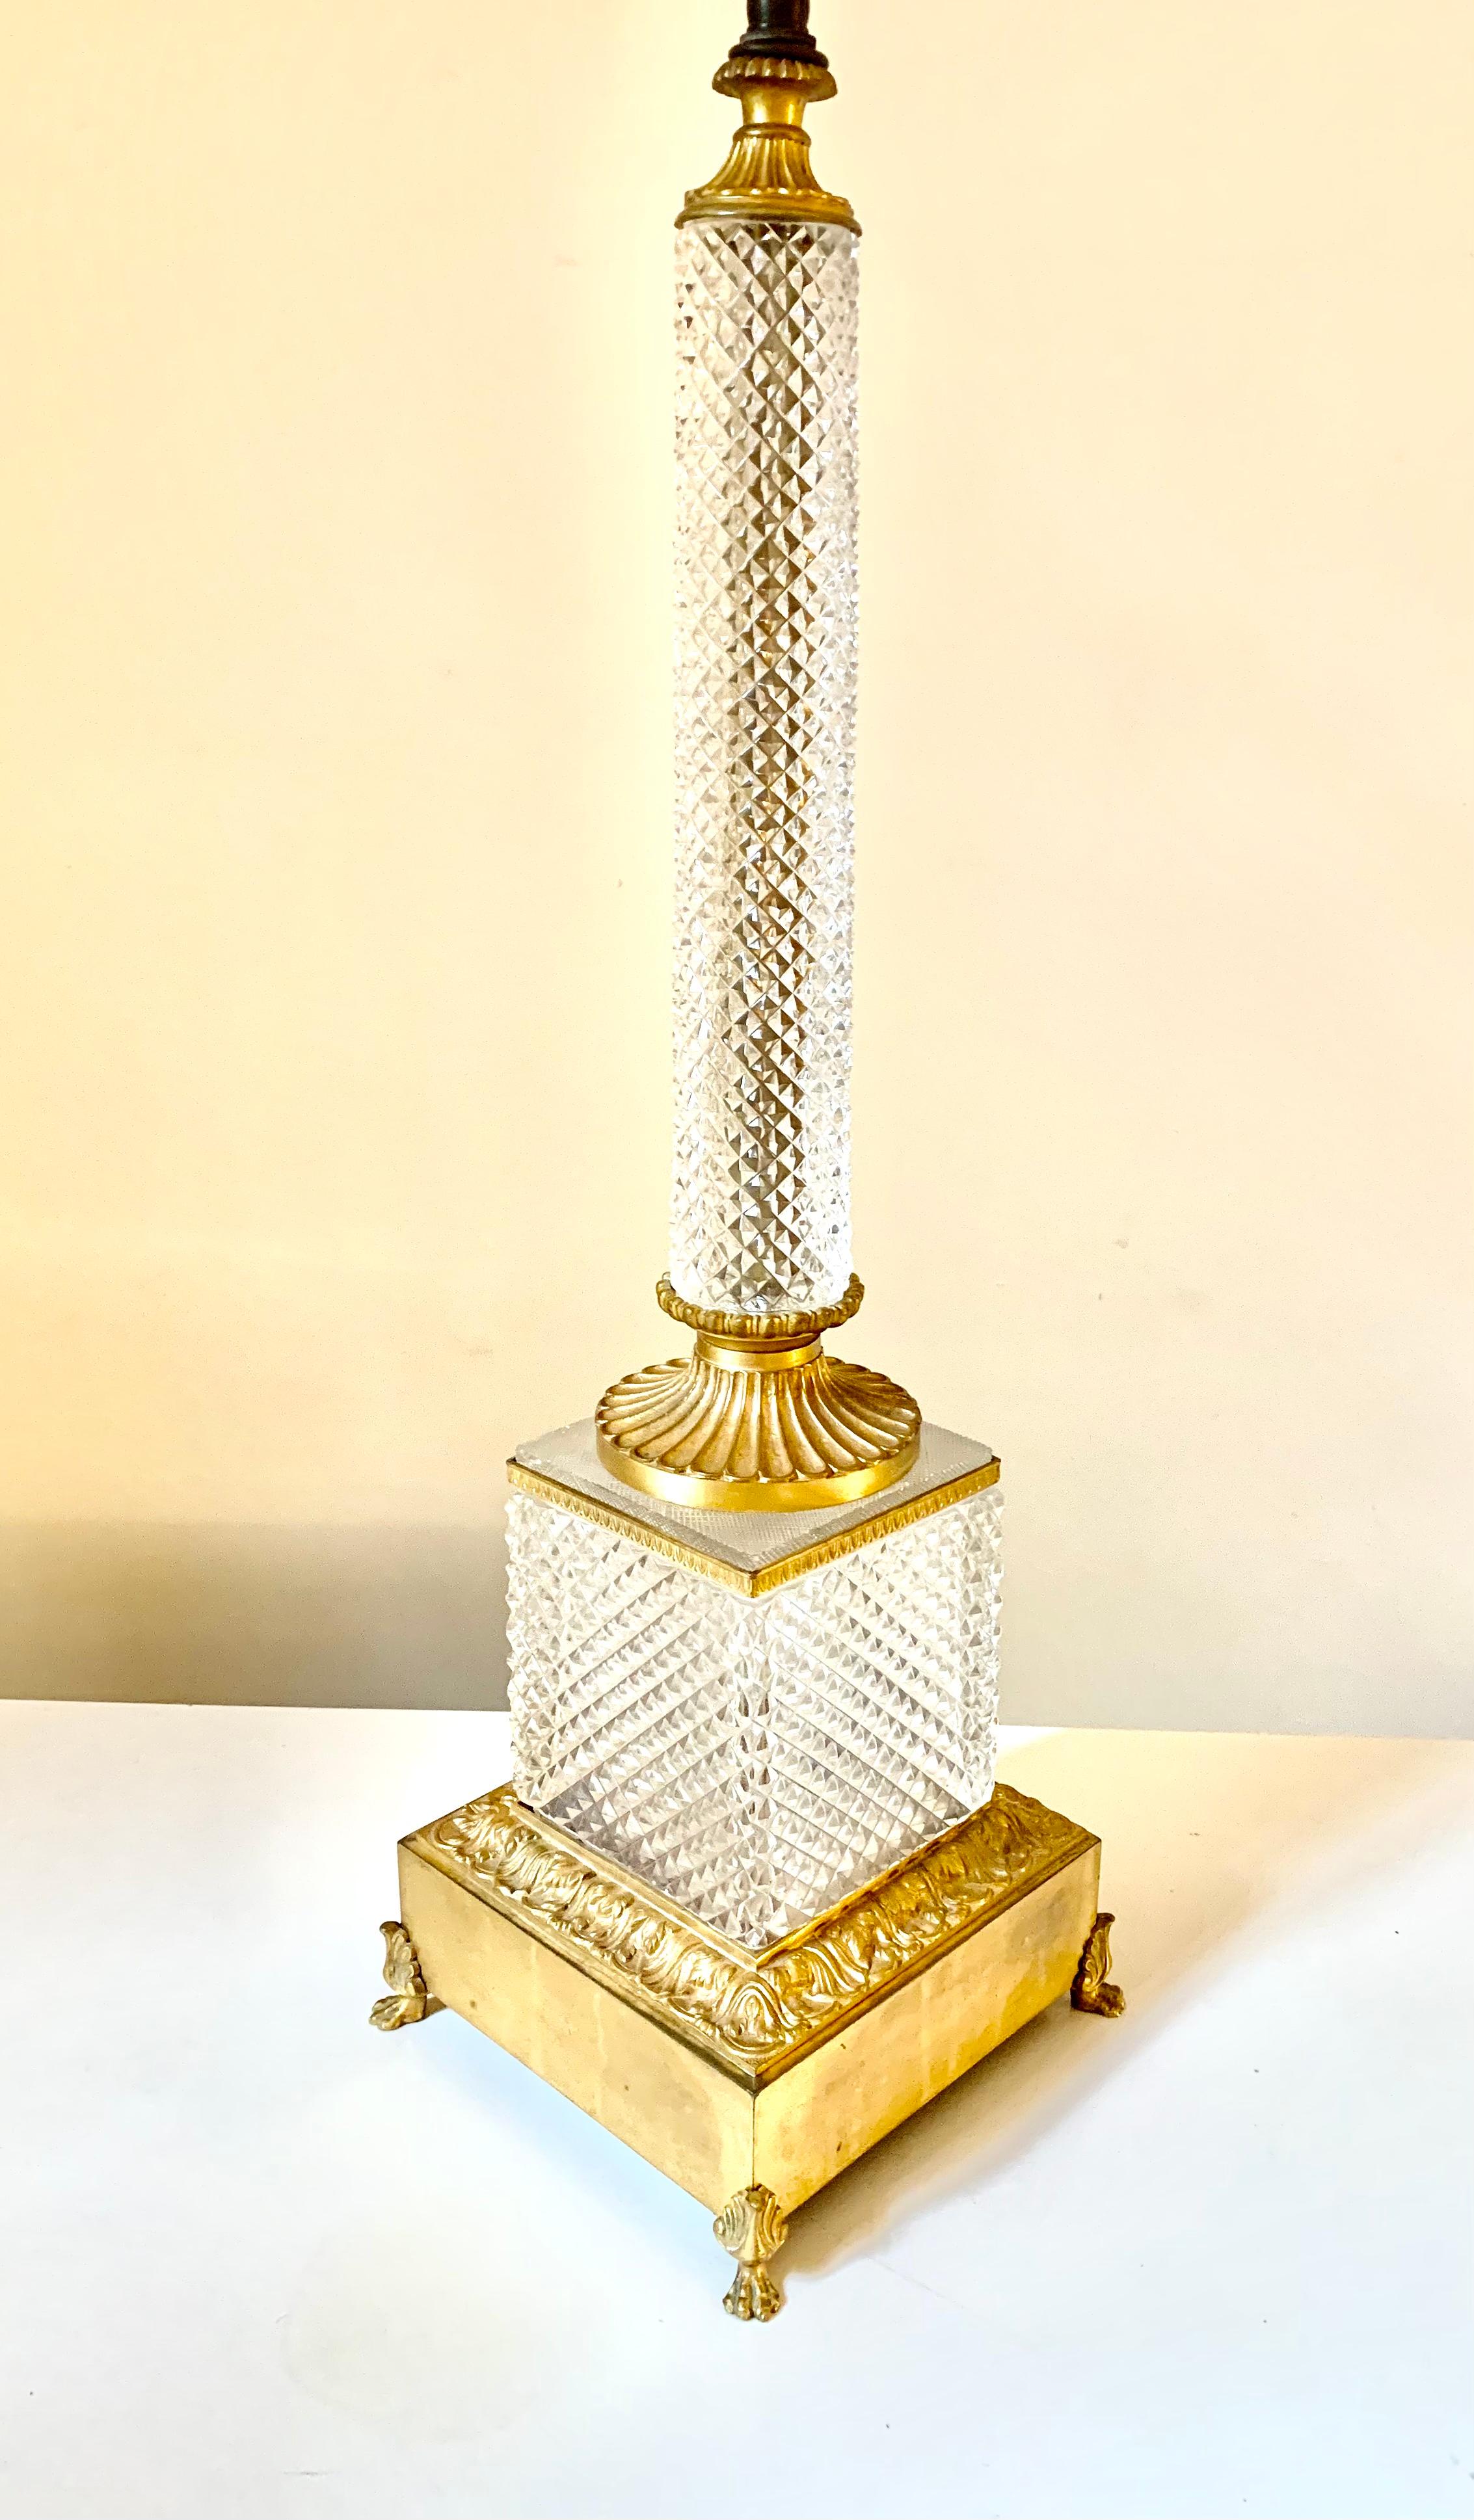 Impressionnante lampe de table de style néoclassique, surdimensionnée, en cristal taillé au diamant de qualité Baccarat et en bronze doré.
19ème siècle
France
Colonne circulaire en cristal taillé en forme de diamant avec un chapiteau et une base en